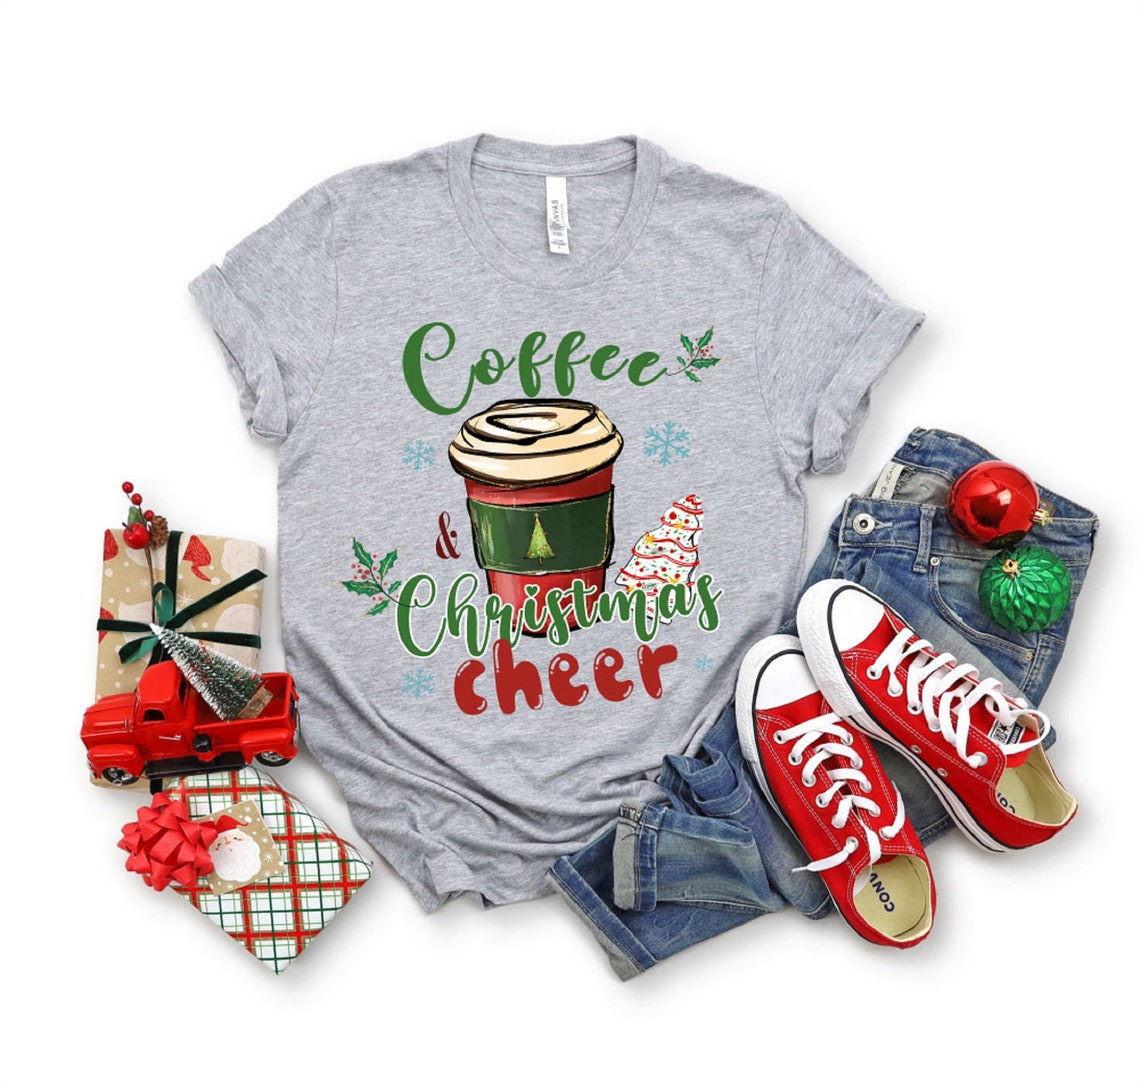 Coffee Christmas Cheer Shirt, 2022 Christmas Holiday Shirt, Family Group Christmas, Woman Christmas Gift, Christmas Party Shirt, Xmas Tee